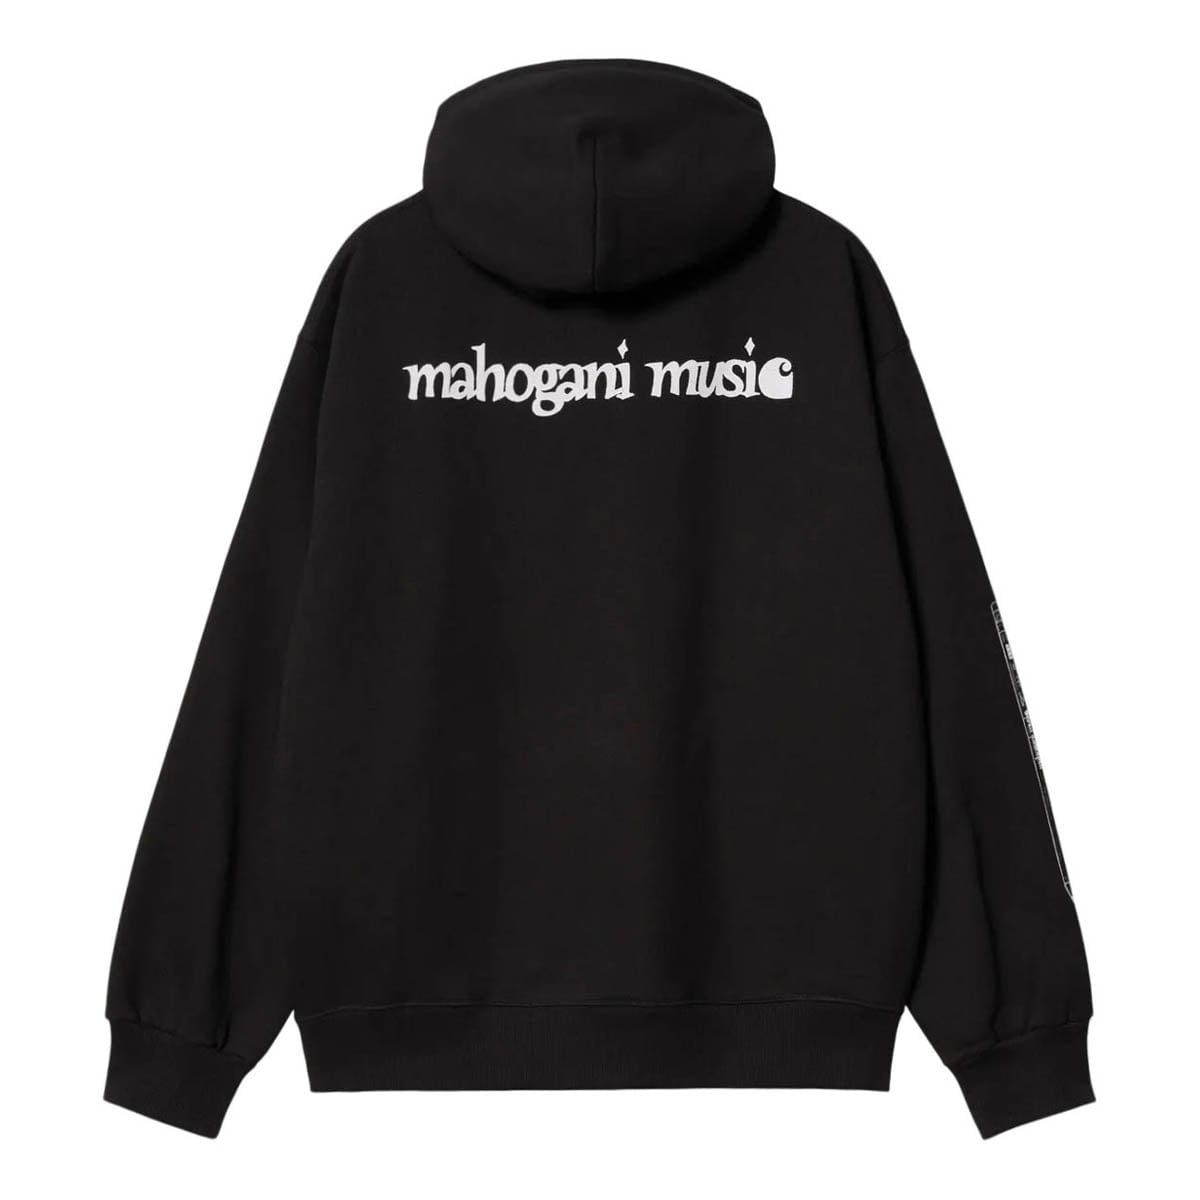 Carhartt WIP Hoodies & Sweatshirts HOODED MAHOGANI MUSIC SWEATHIRT